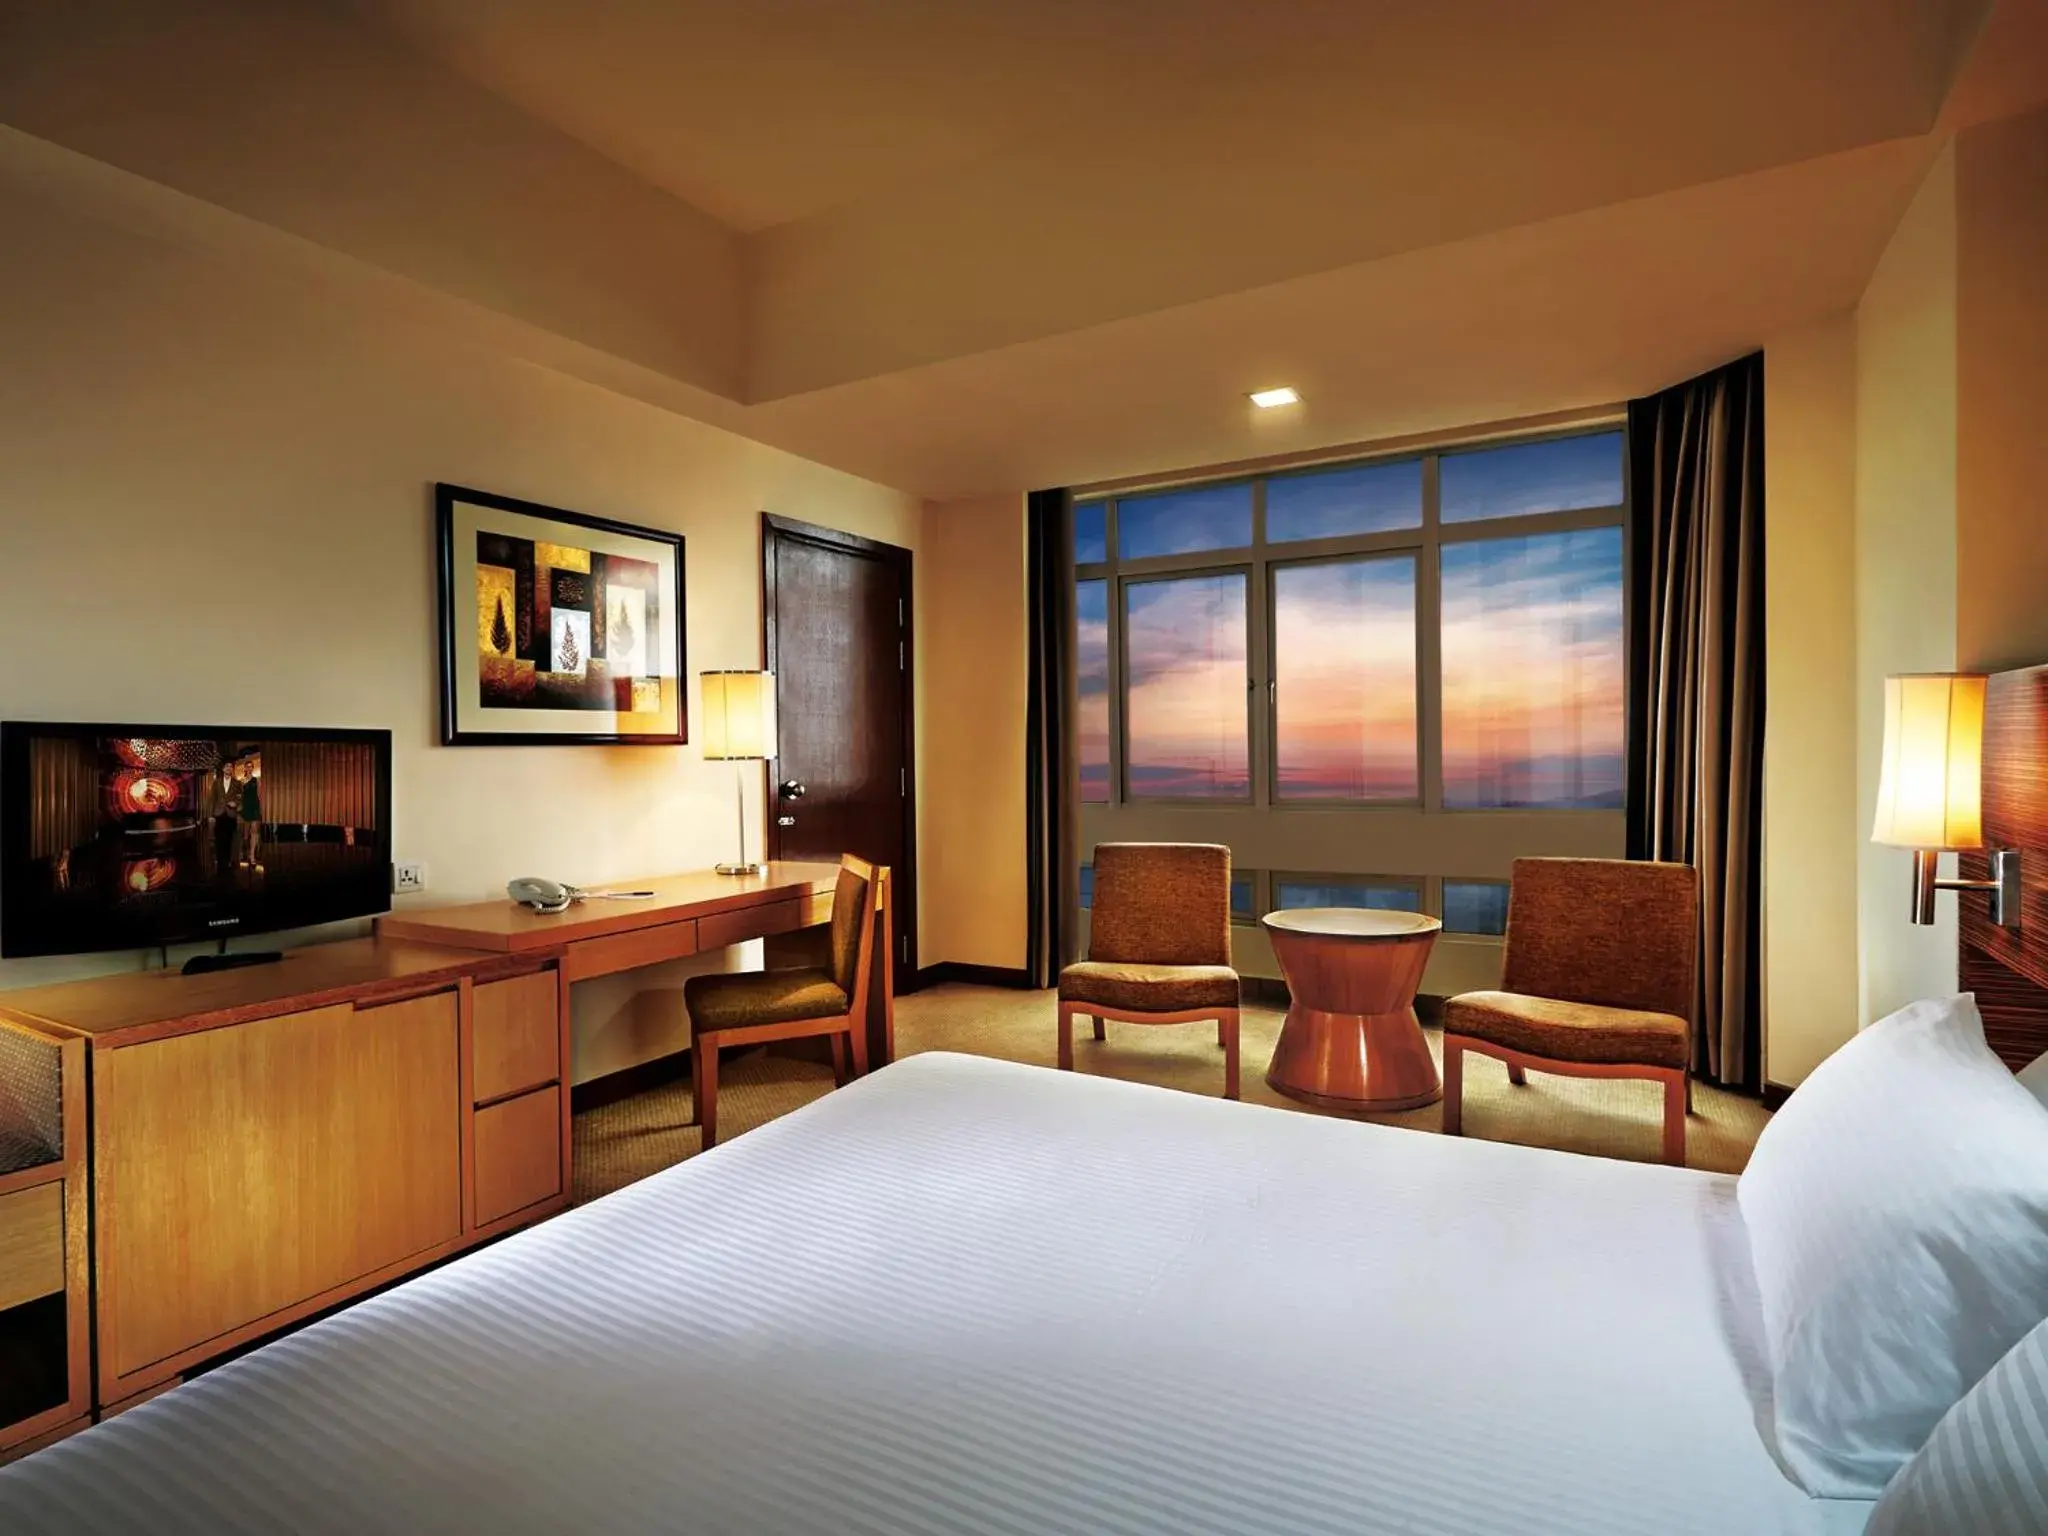 Bed in Resorts World Genting - Resort Hotel